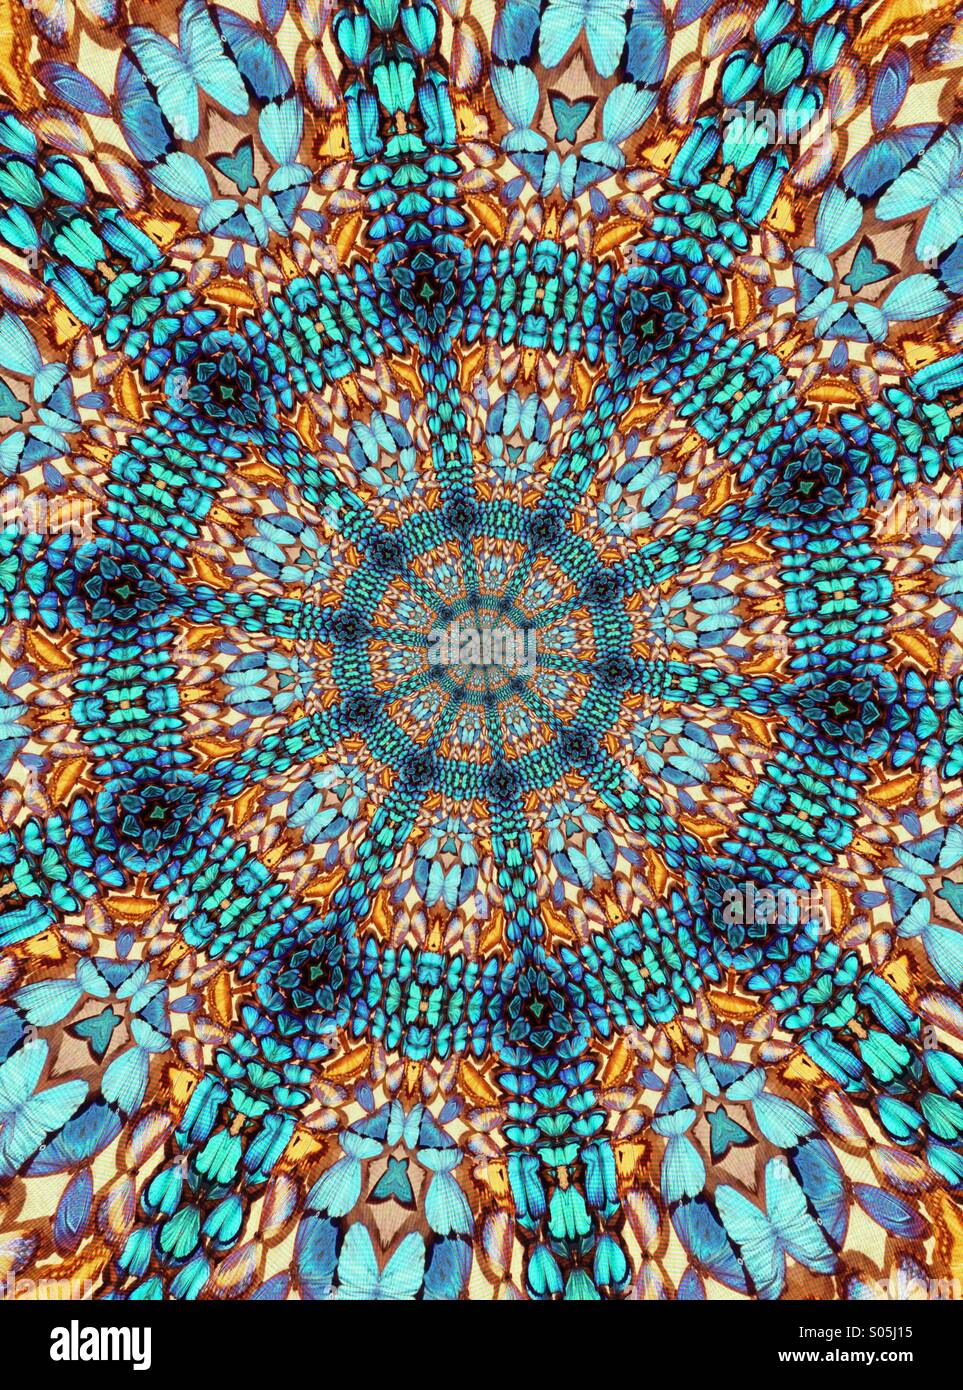 Ein Kaleidoskop Bild gemacht von einem Bild von echte Schmetterlinge Stockfoto